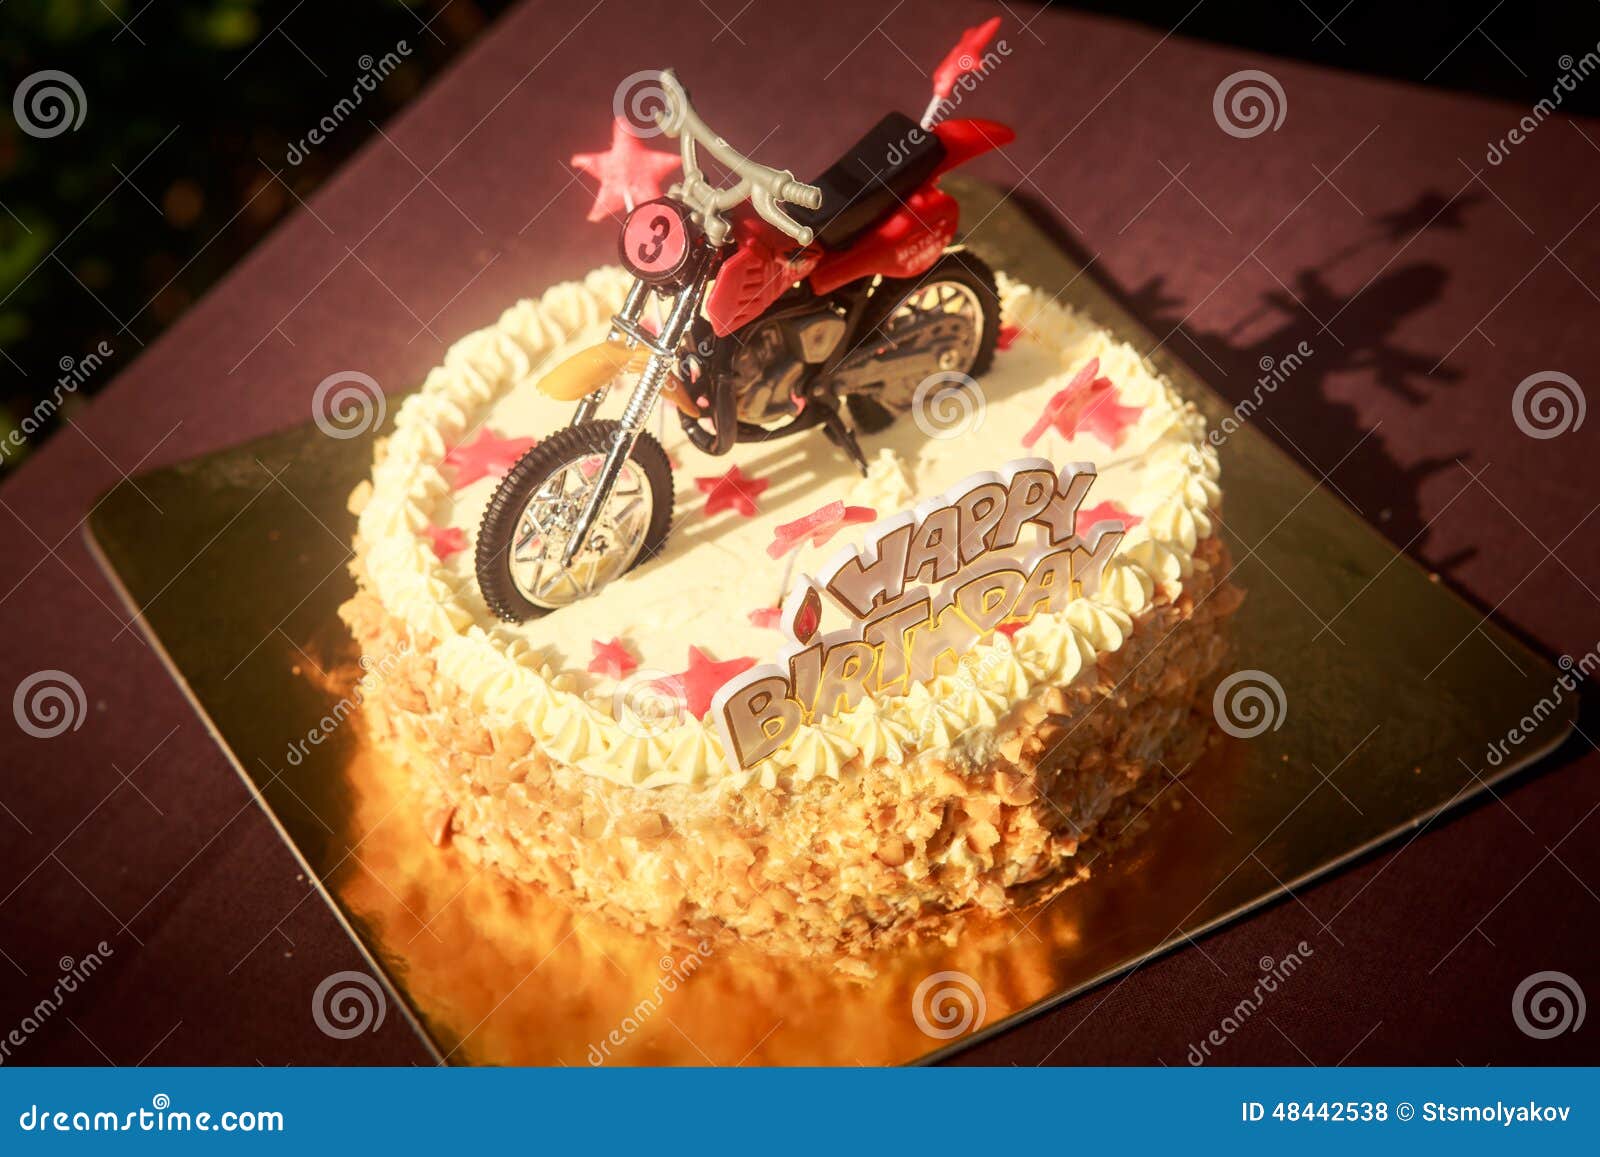 Motocross  Bolo de moto, Aniversário de motocross, Bolo motocross